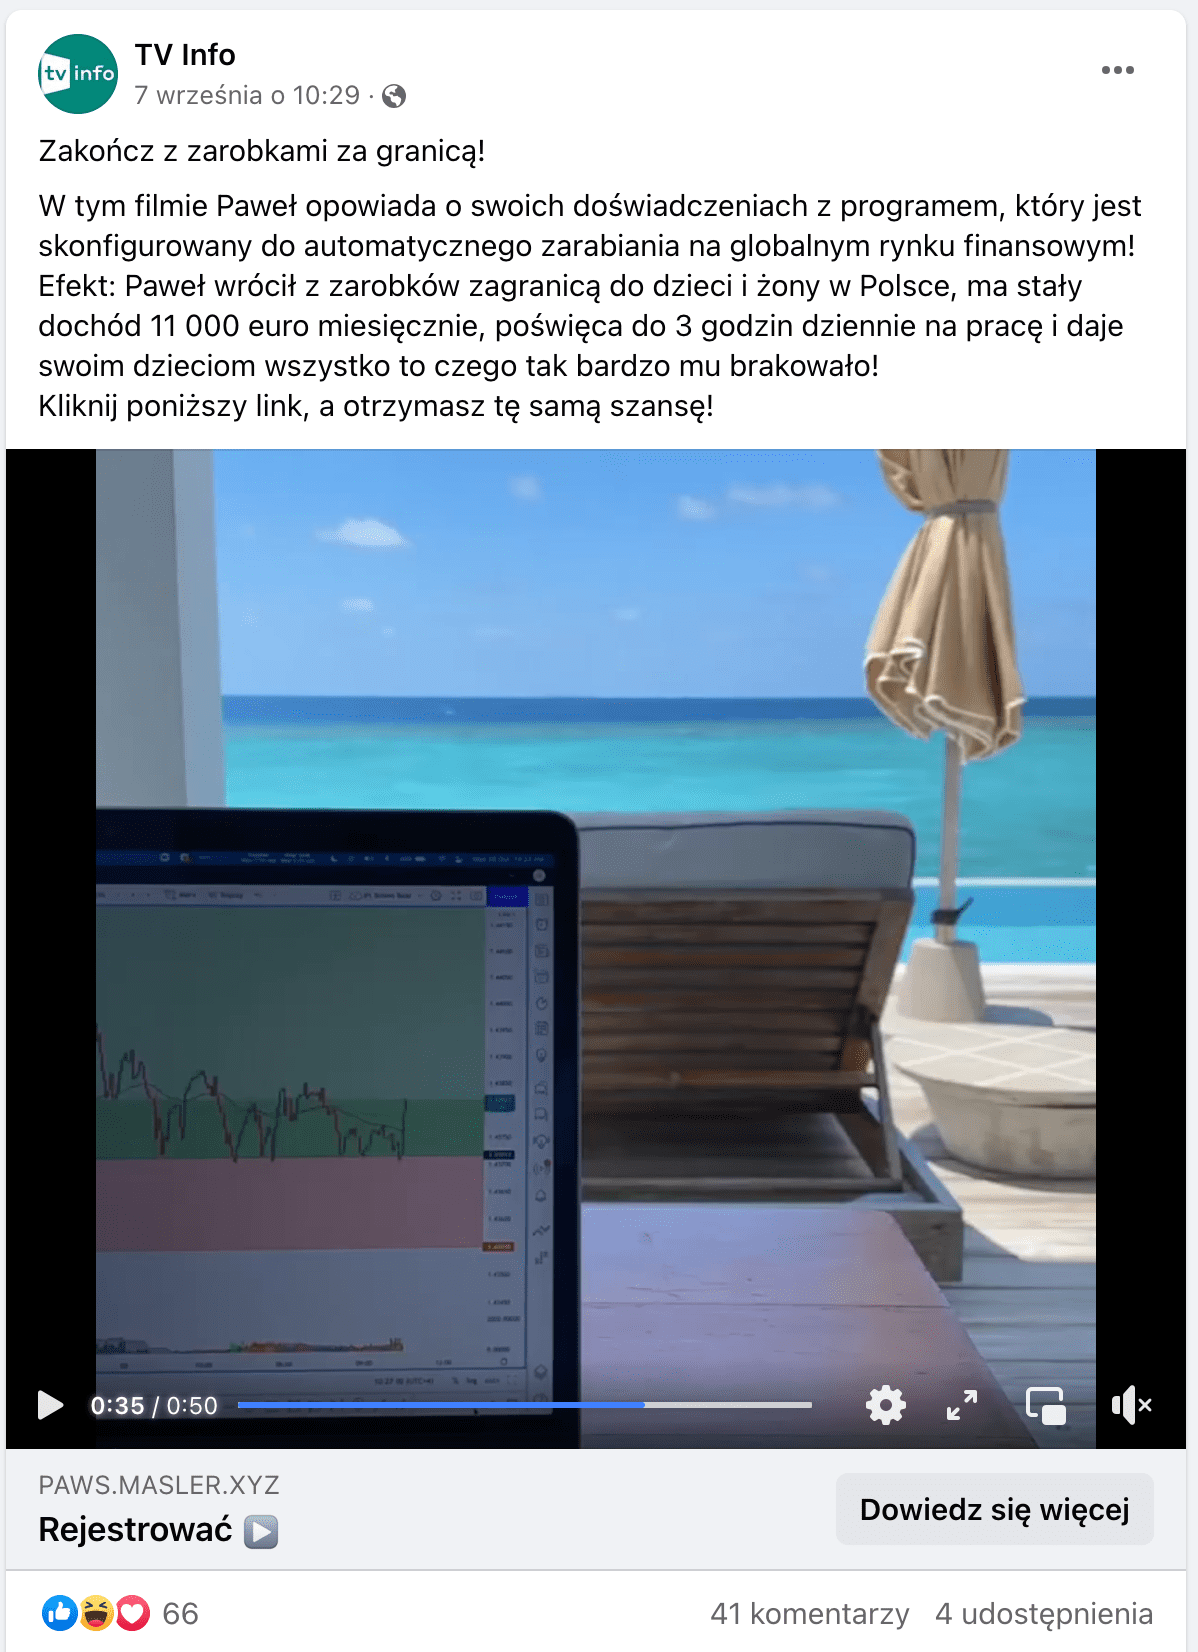 Zrzut ekranu posta na Facebooku. W kadrze załączonego filmu widzimy ekran komputera na tle leżaka, parasola i przejrzystego morza.